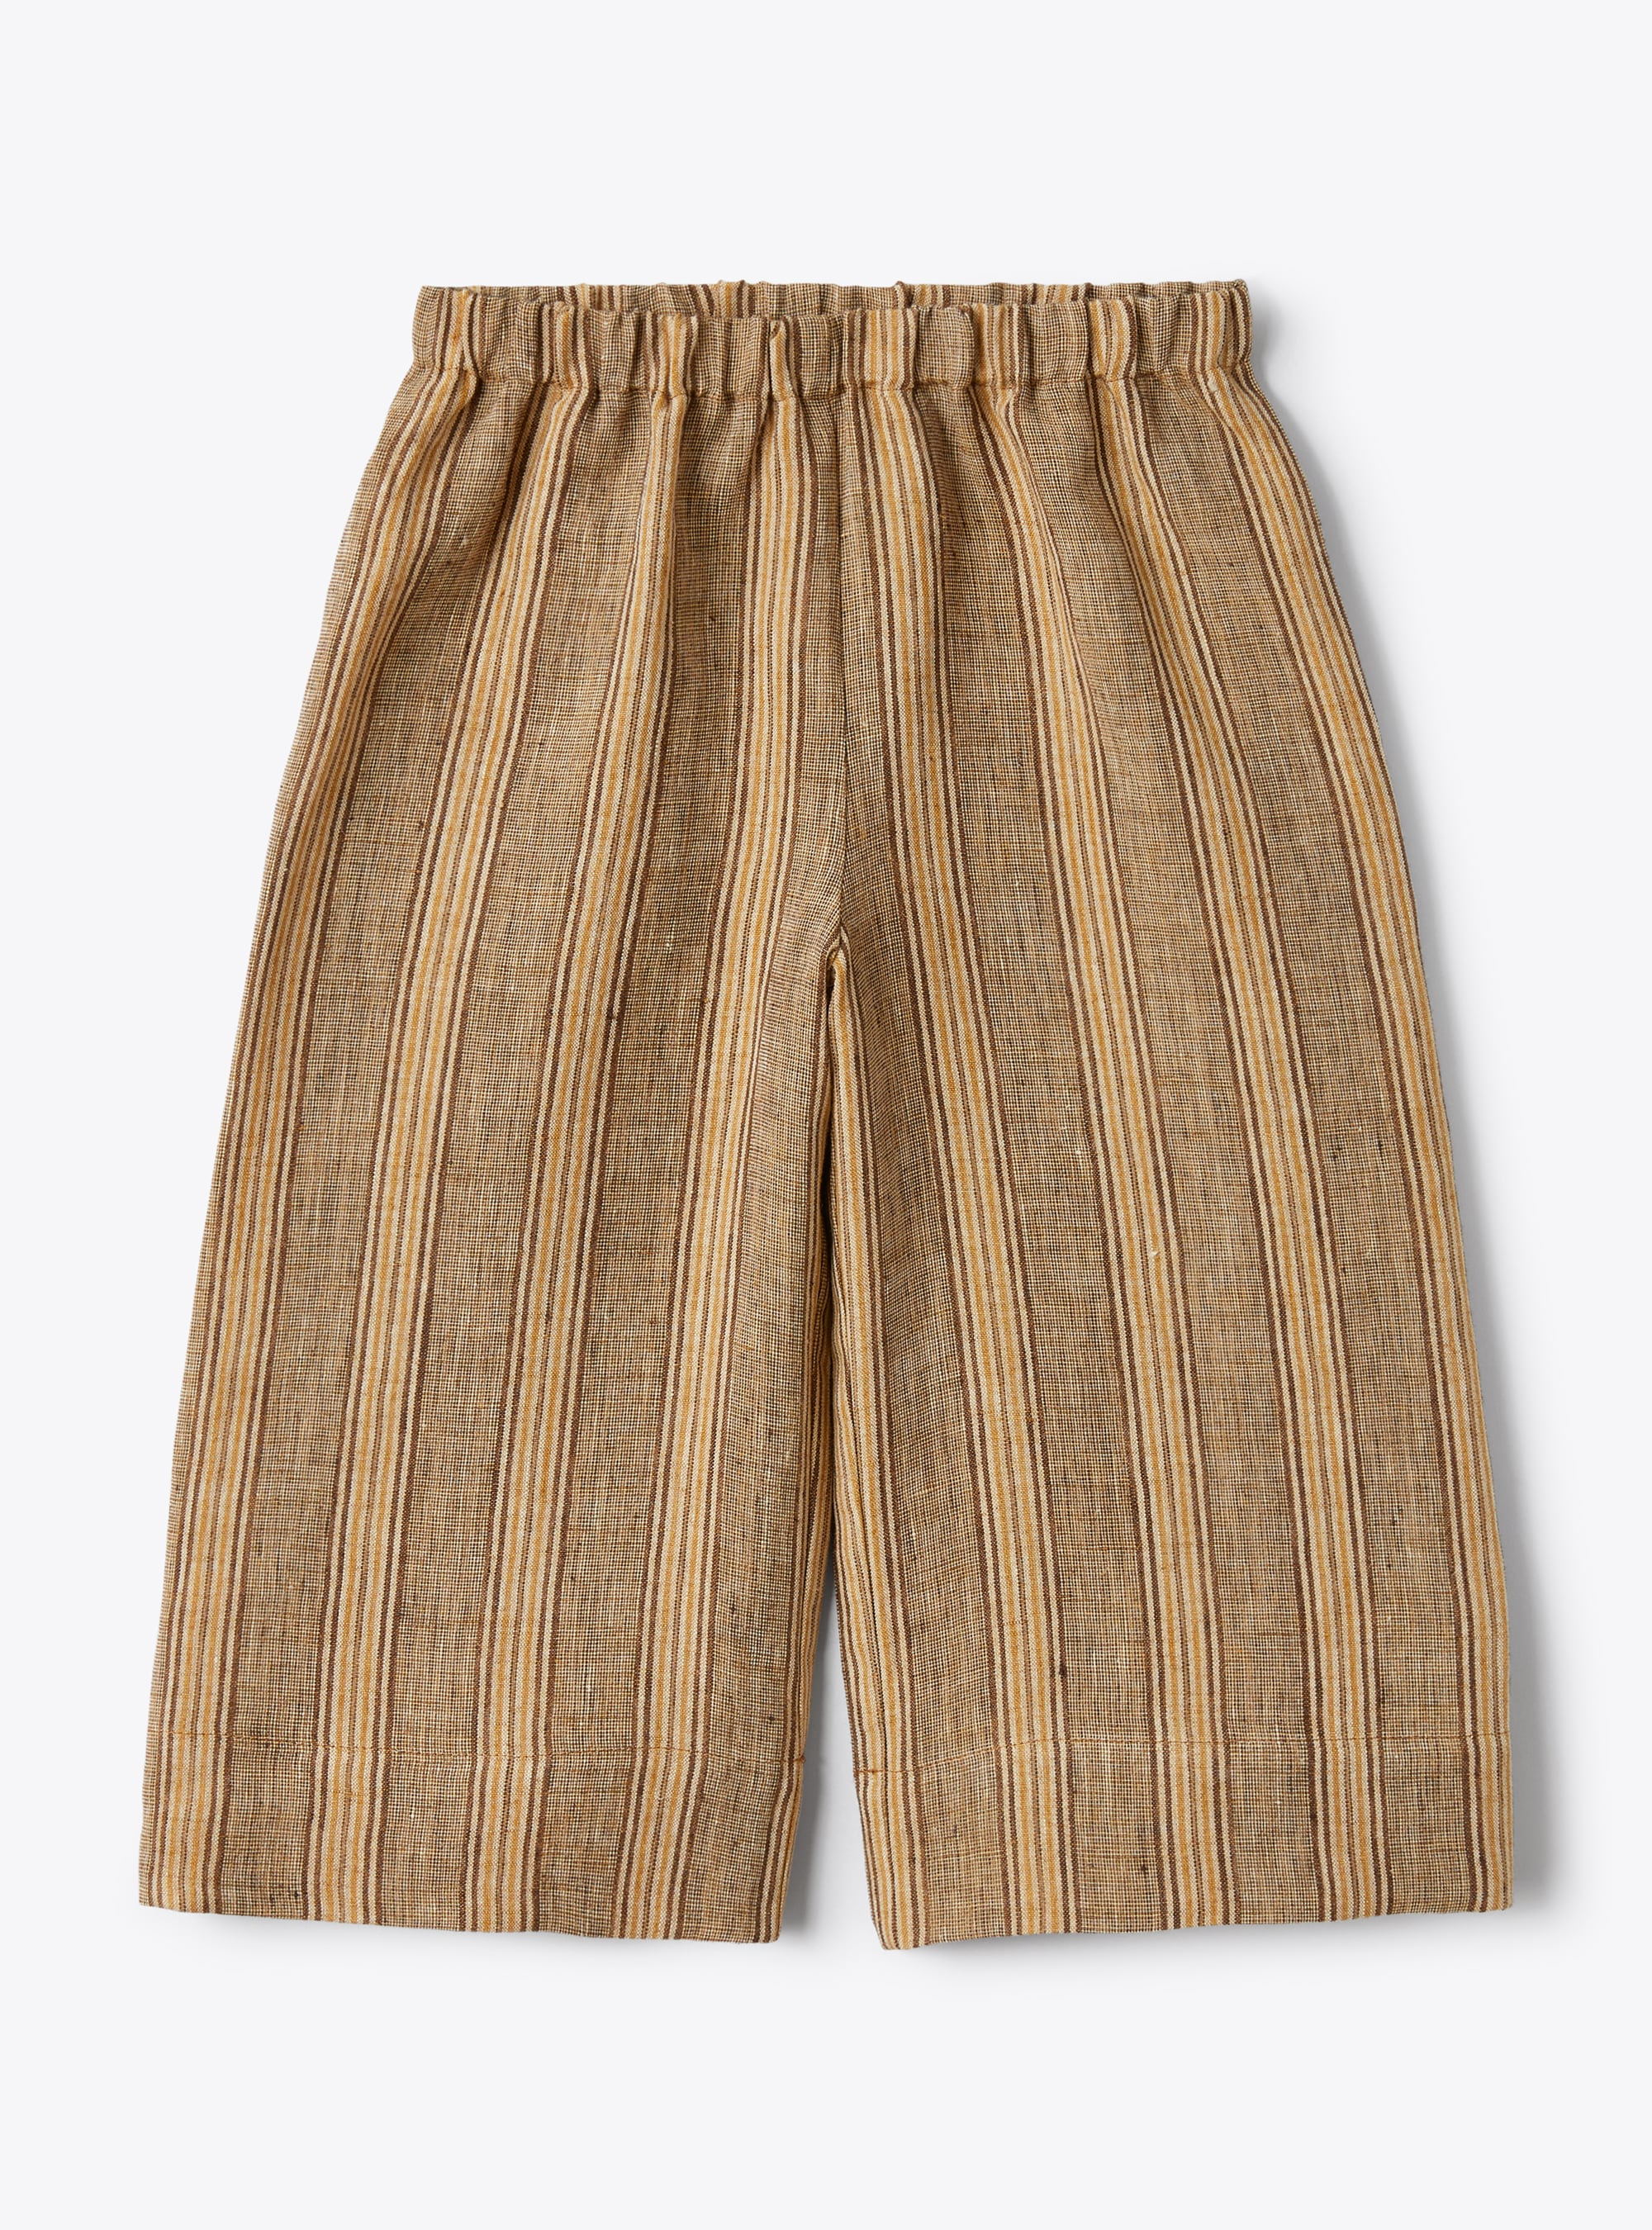 Pantalon capri en lin chiné à rayures couleur noix - Pantalons - Il Gufo